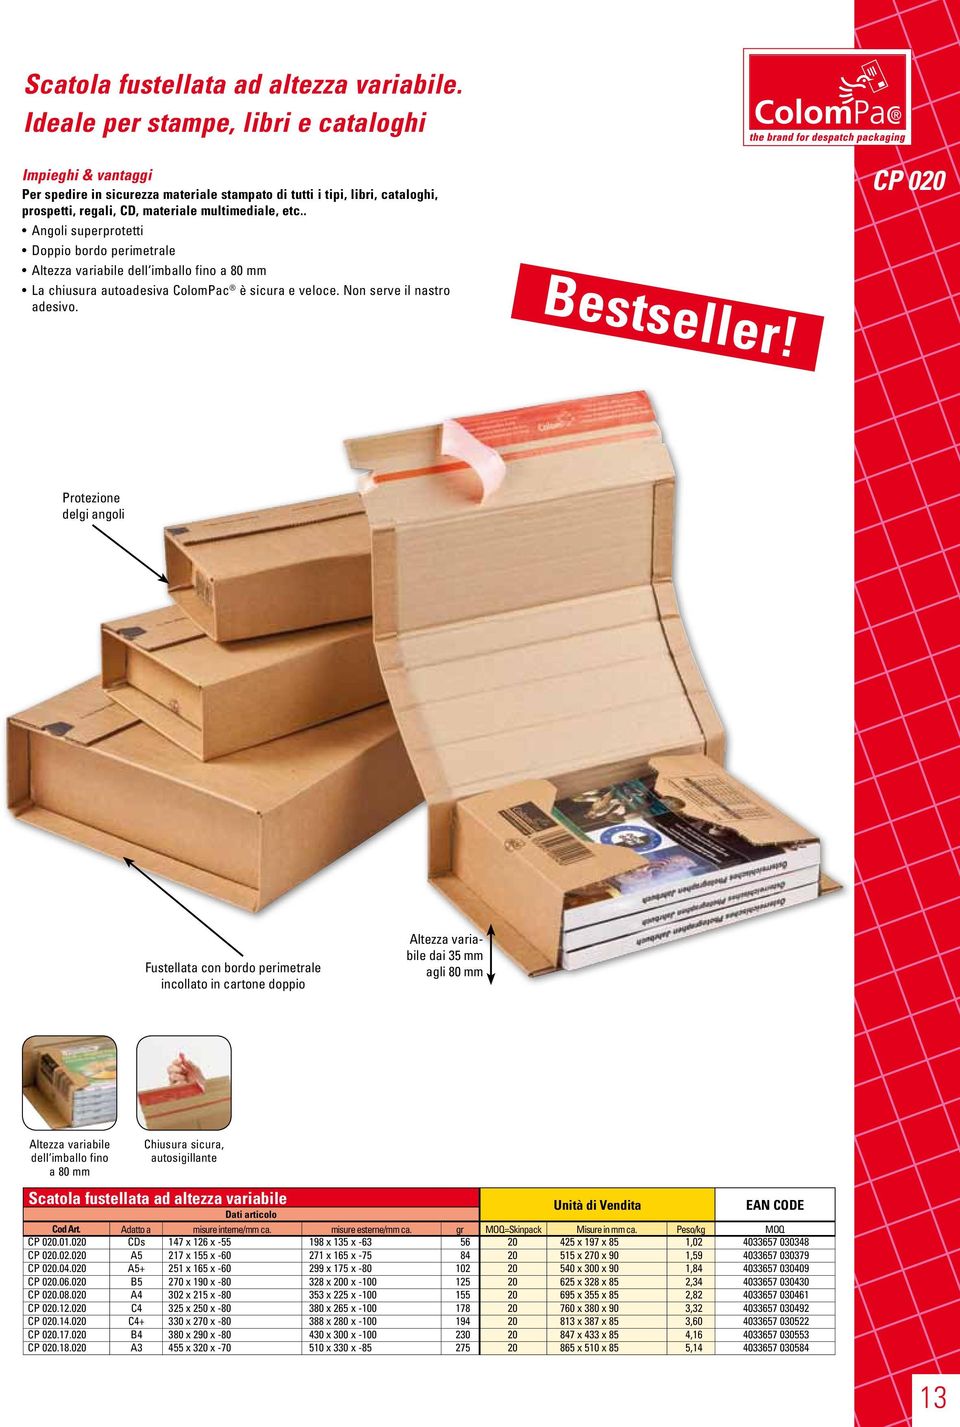 45x30x35 Kit Scatola Per Imballaggio Spedizione Trasloco 10 Forniture Per Imballaggio E Spedizione Scatole In Cartone Ondulato